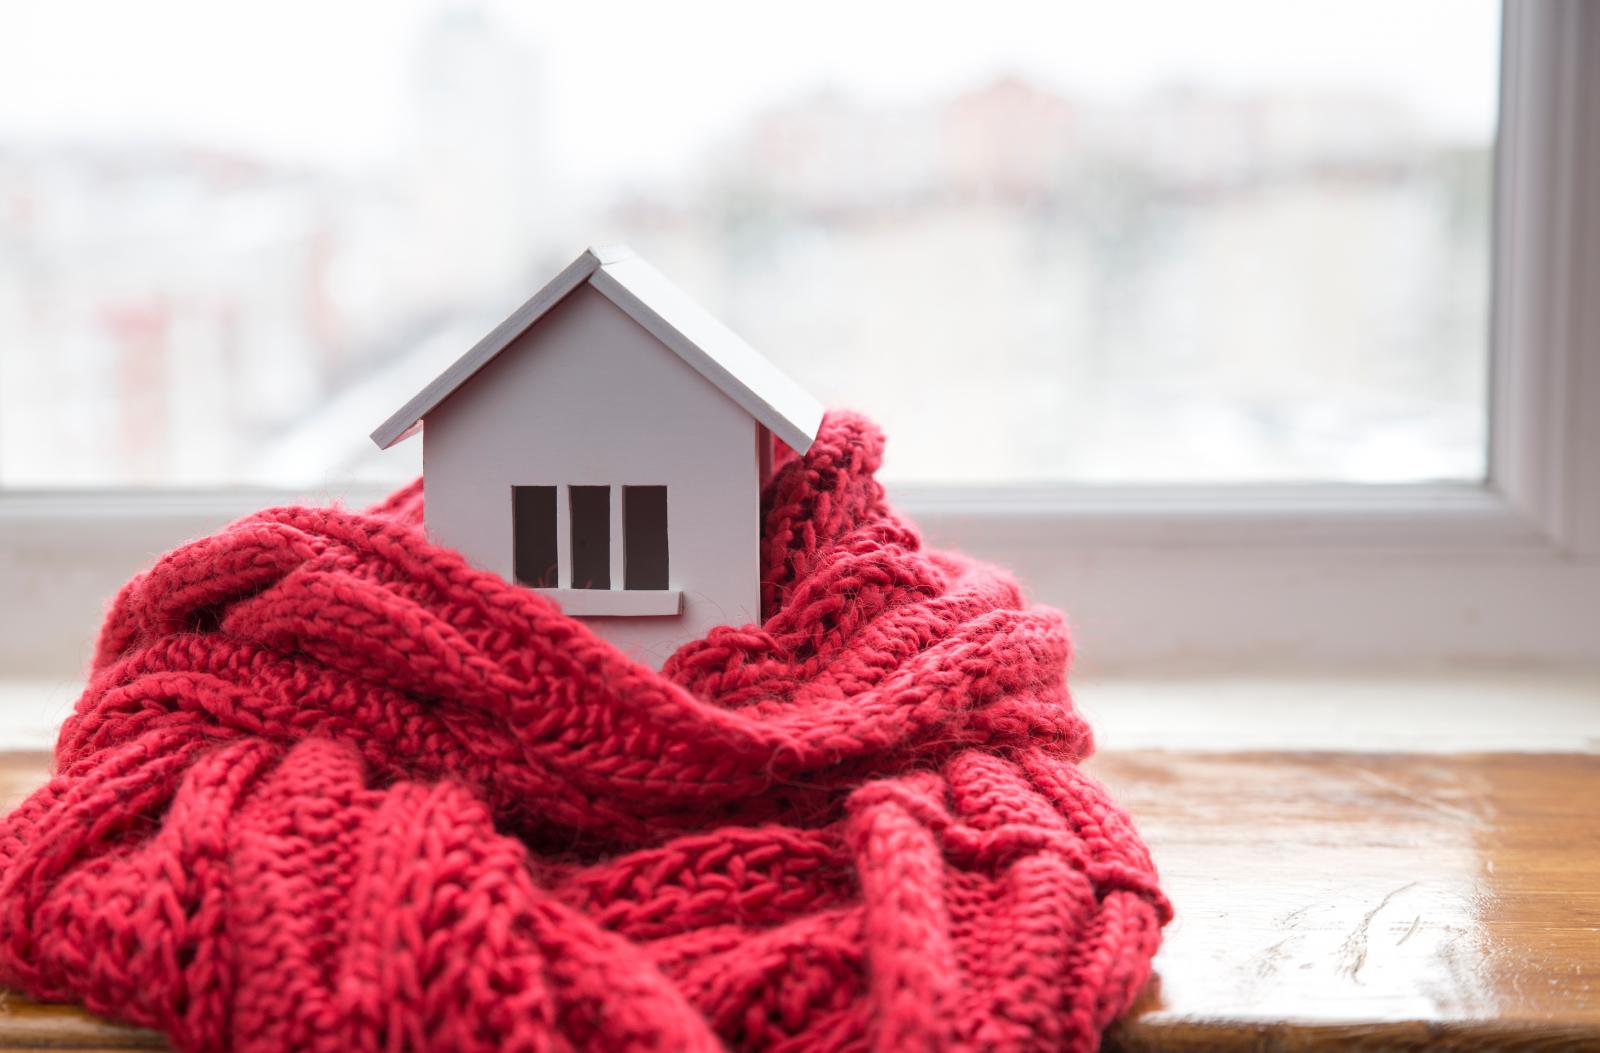 Chọn hướng nhà tránh gió thổi để nhà ấm về mùa đông